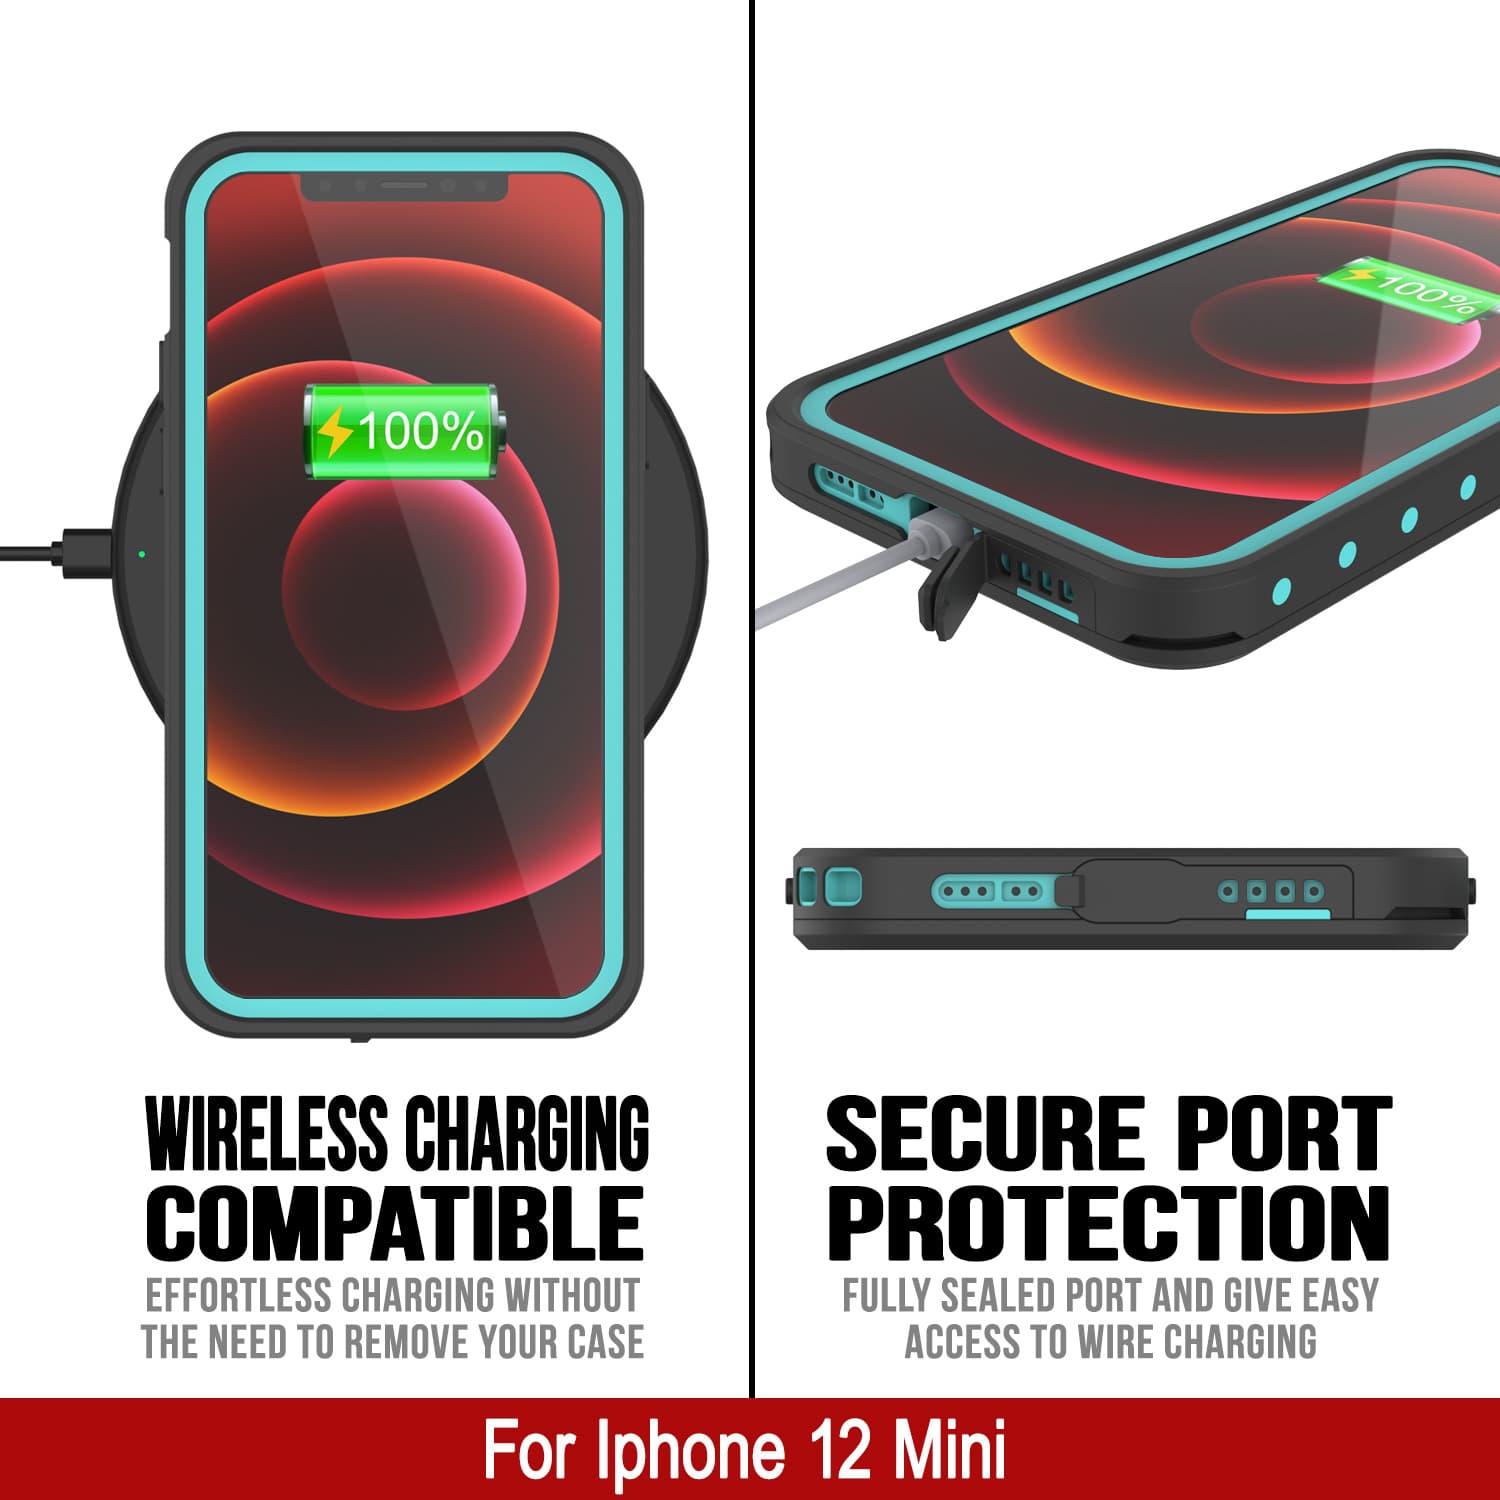 iPhone 12 Mini Waterproof IP68 Case, Punkcase [Teal] [StudStar Series] [Slim Fit]